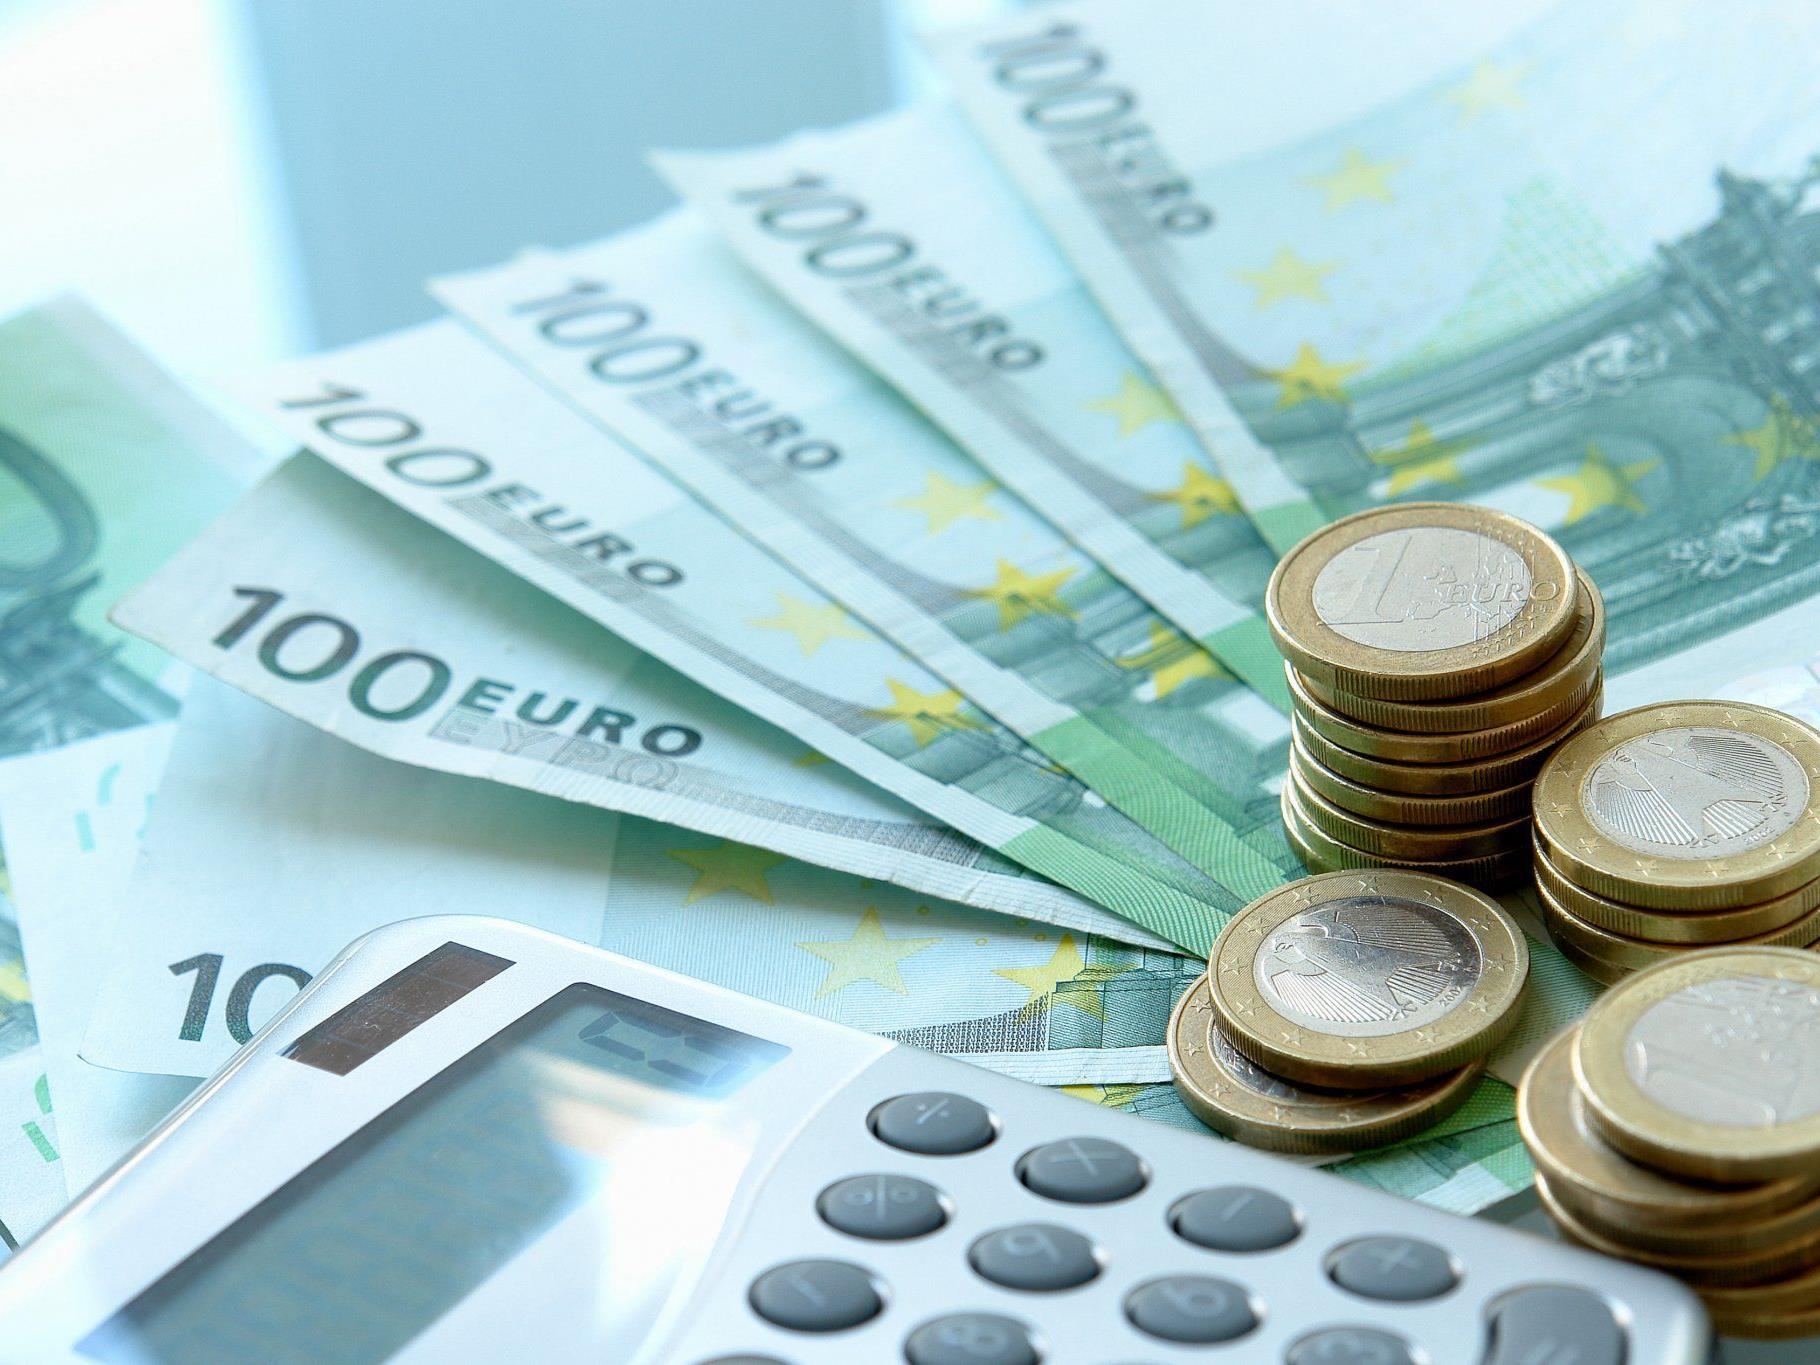 Versicherungsmakler mit 1,9 Millionen Euro in Konkurs